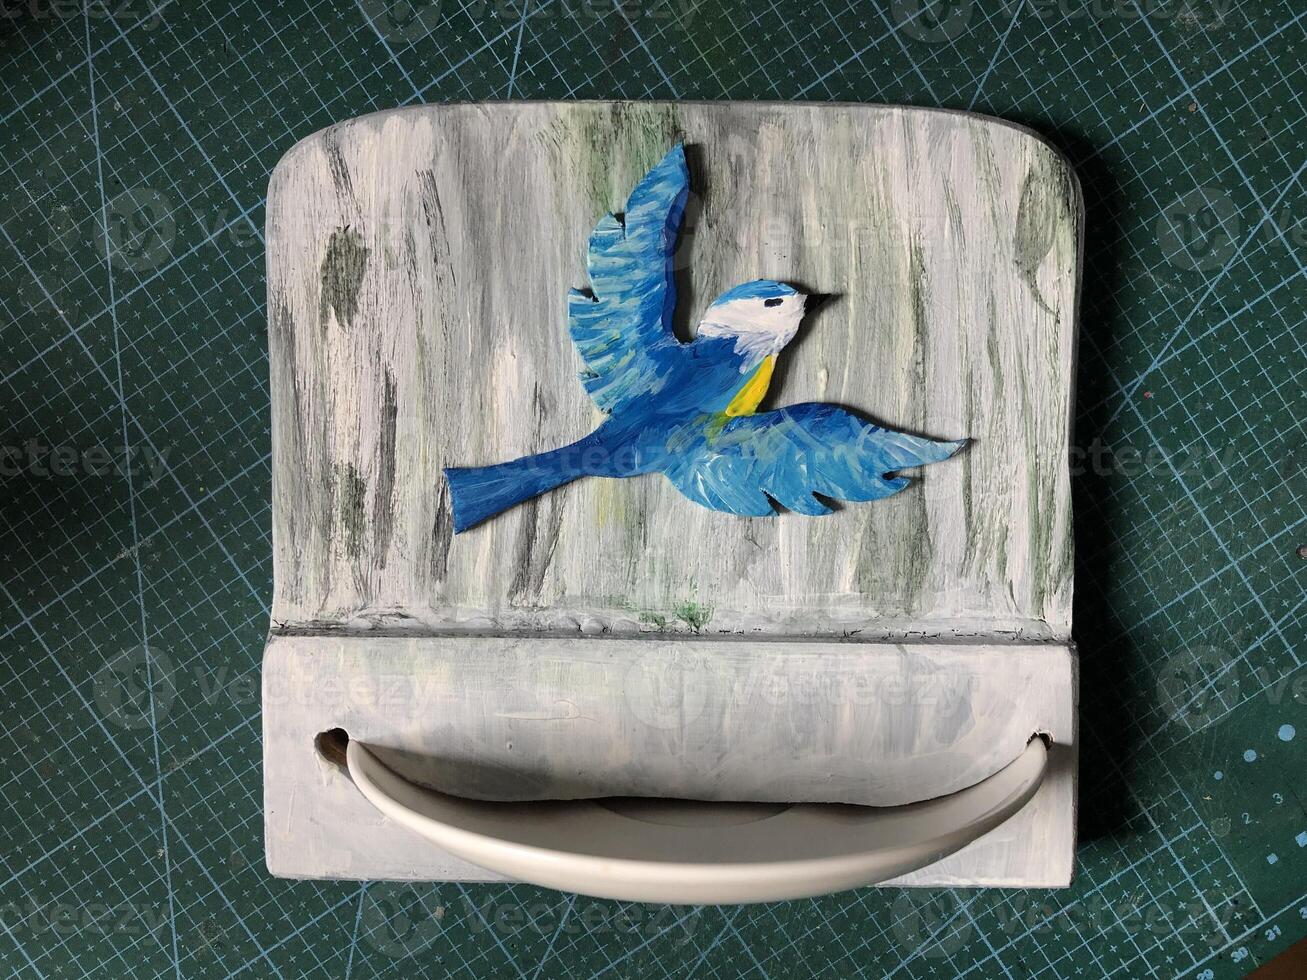 Nouveau fait maison oiseau mangeoire, convexe silhouette dessin de une mésange, porcelaine plaque, gris texturé Contexte photo